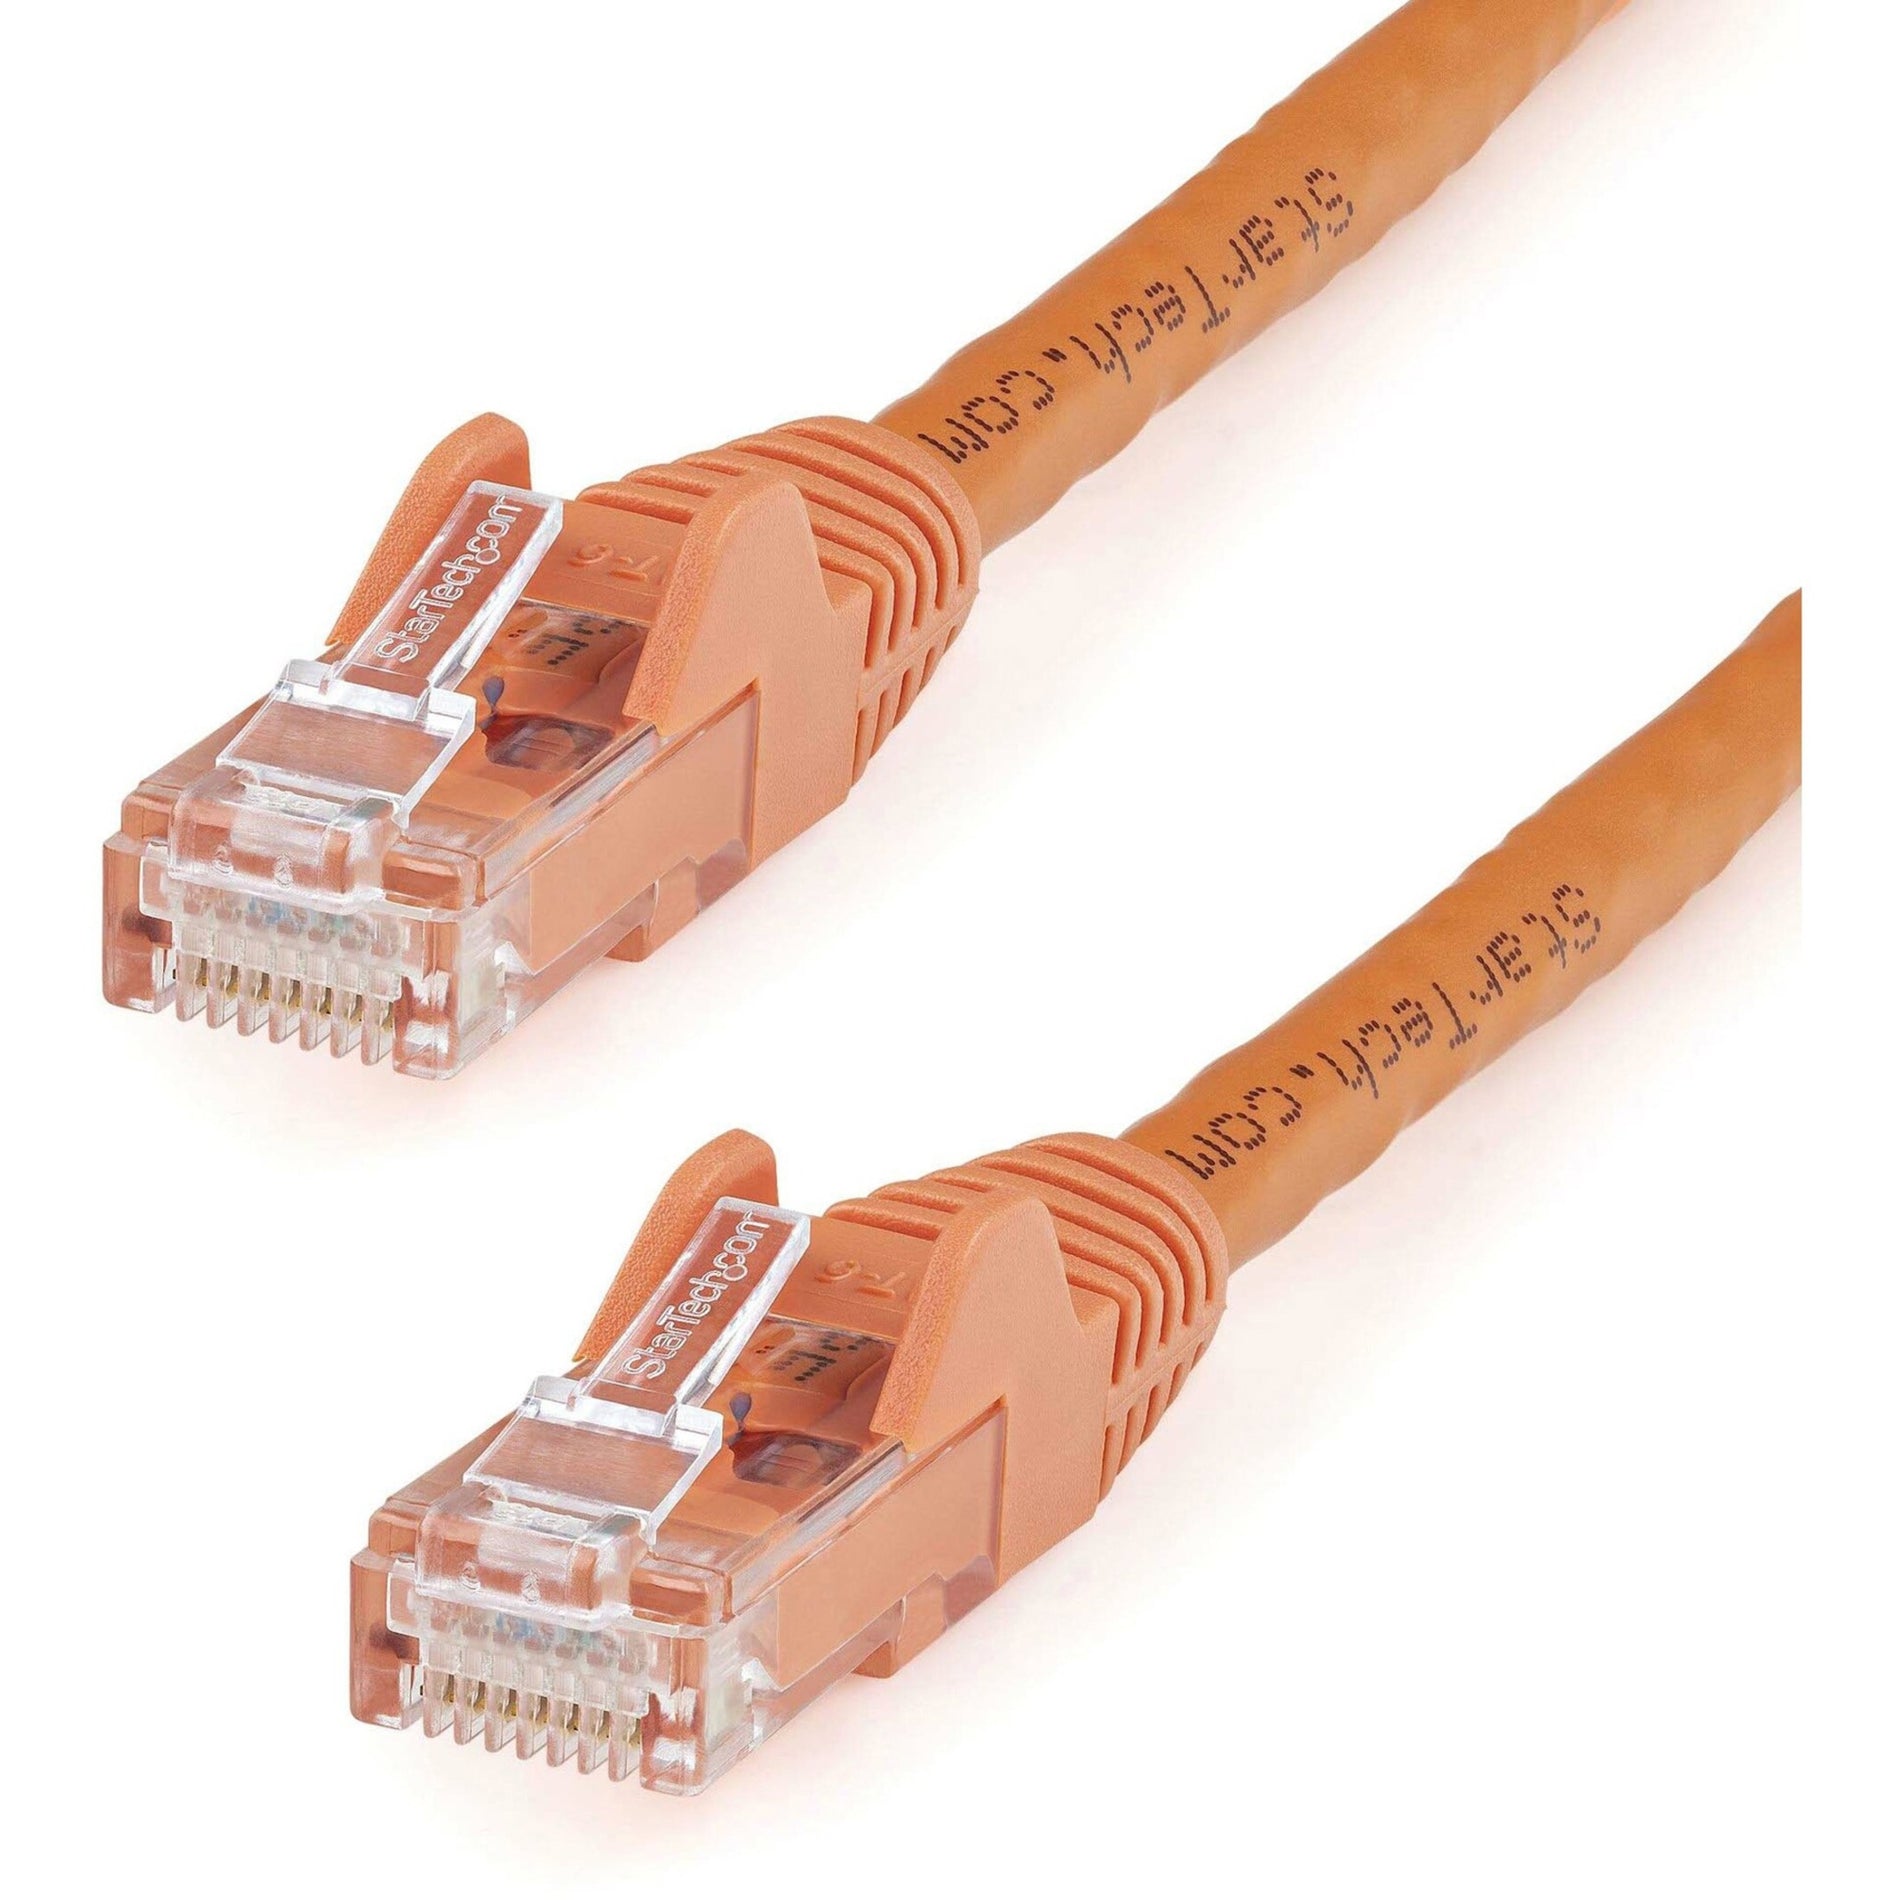 Marca: StarTech.com Cable de conexión UTP Cat6 sin enganches de 100 pies en naranja velocidad de transferencia de datos de 10 Gbit/s alivio de tensión